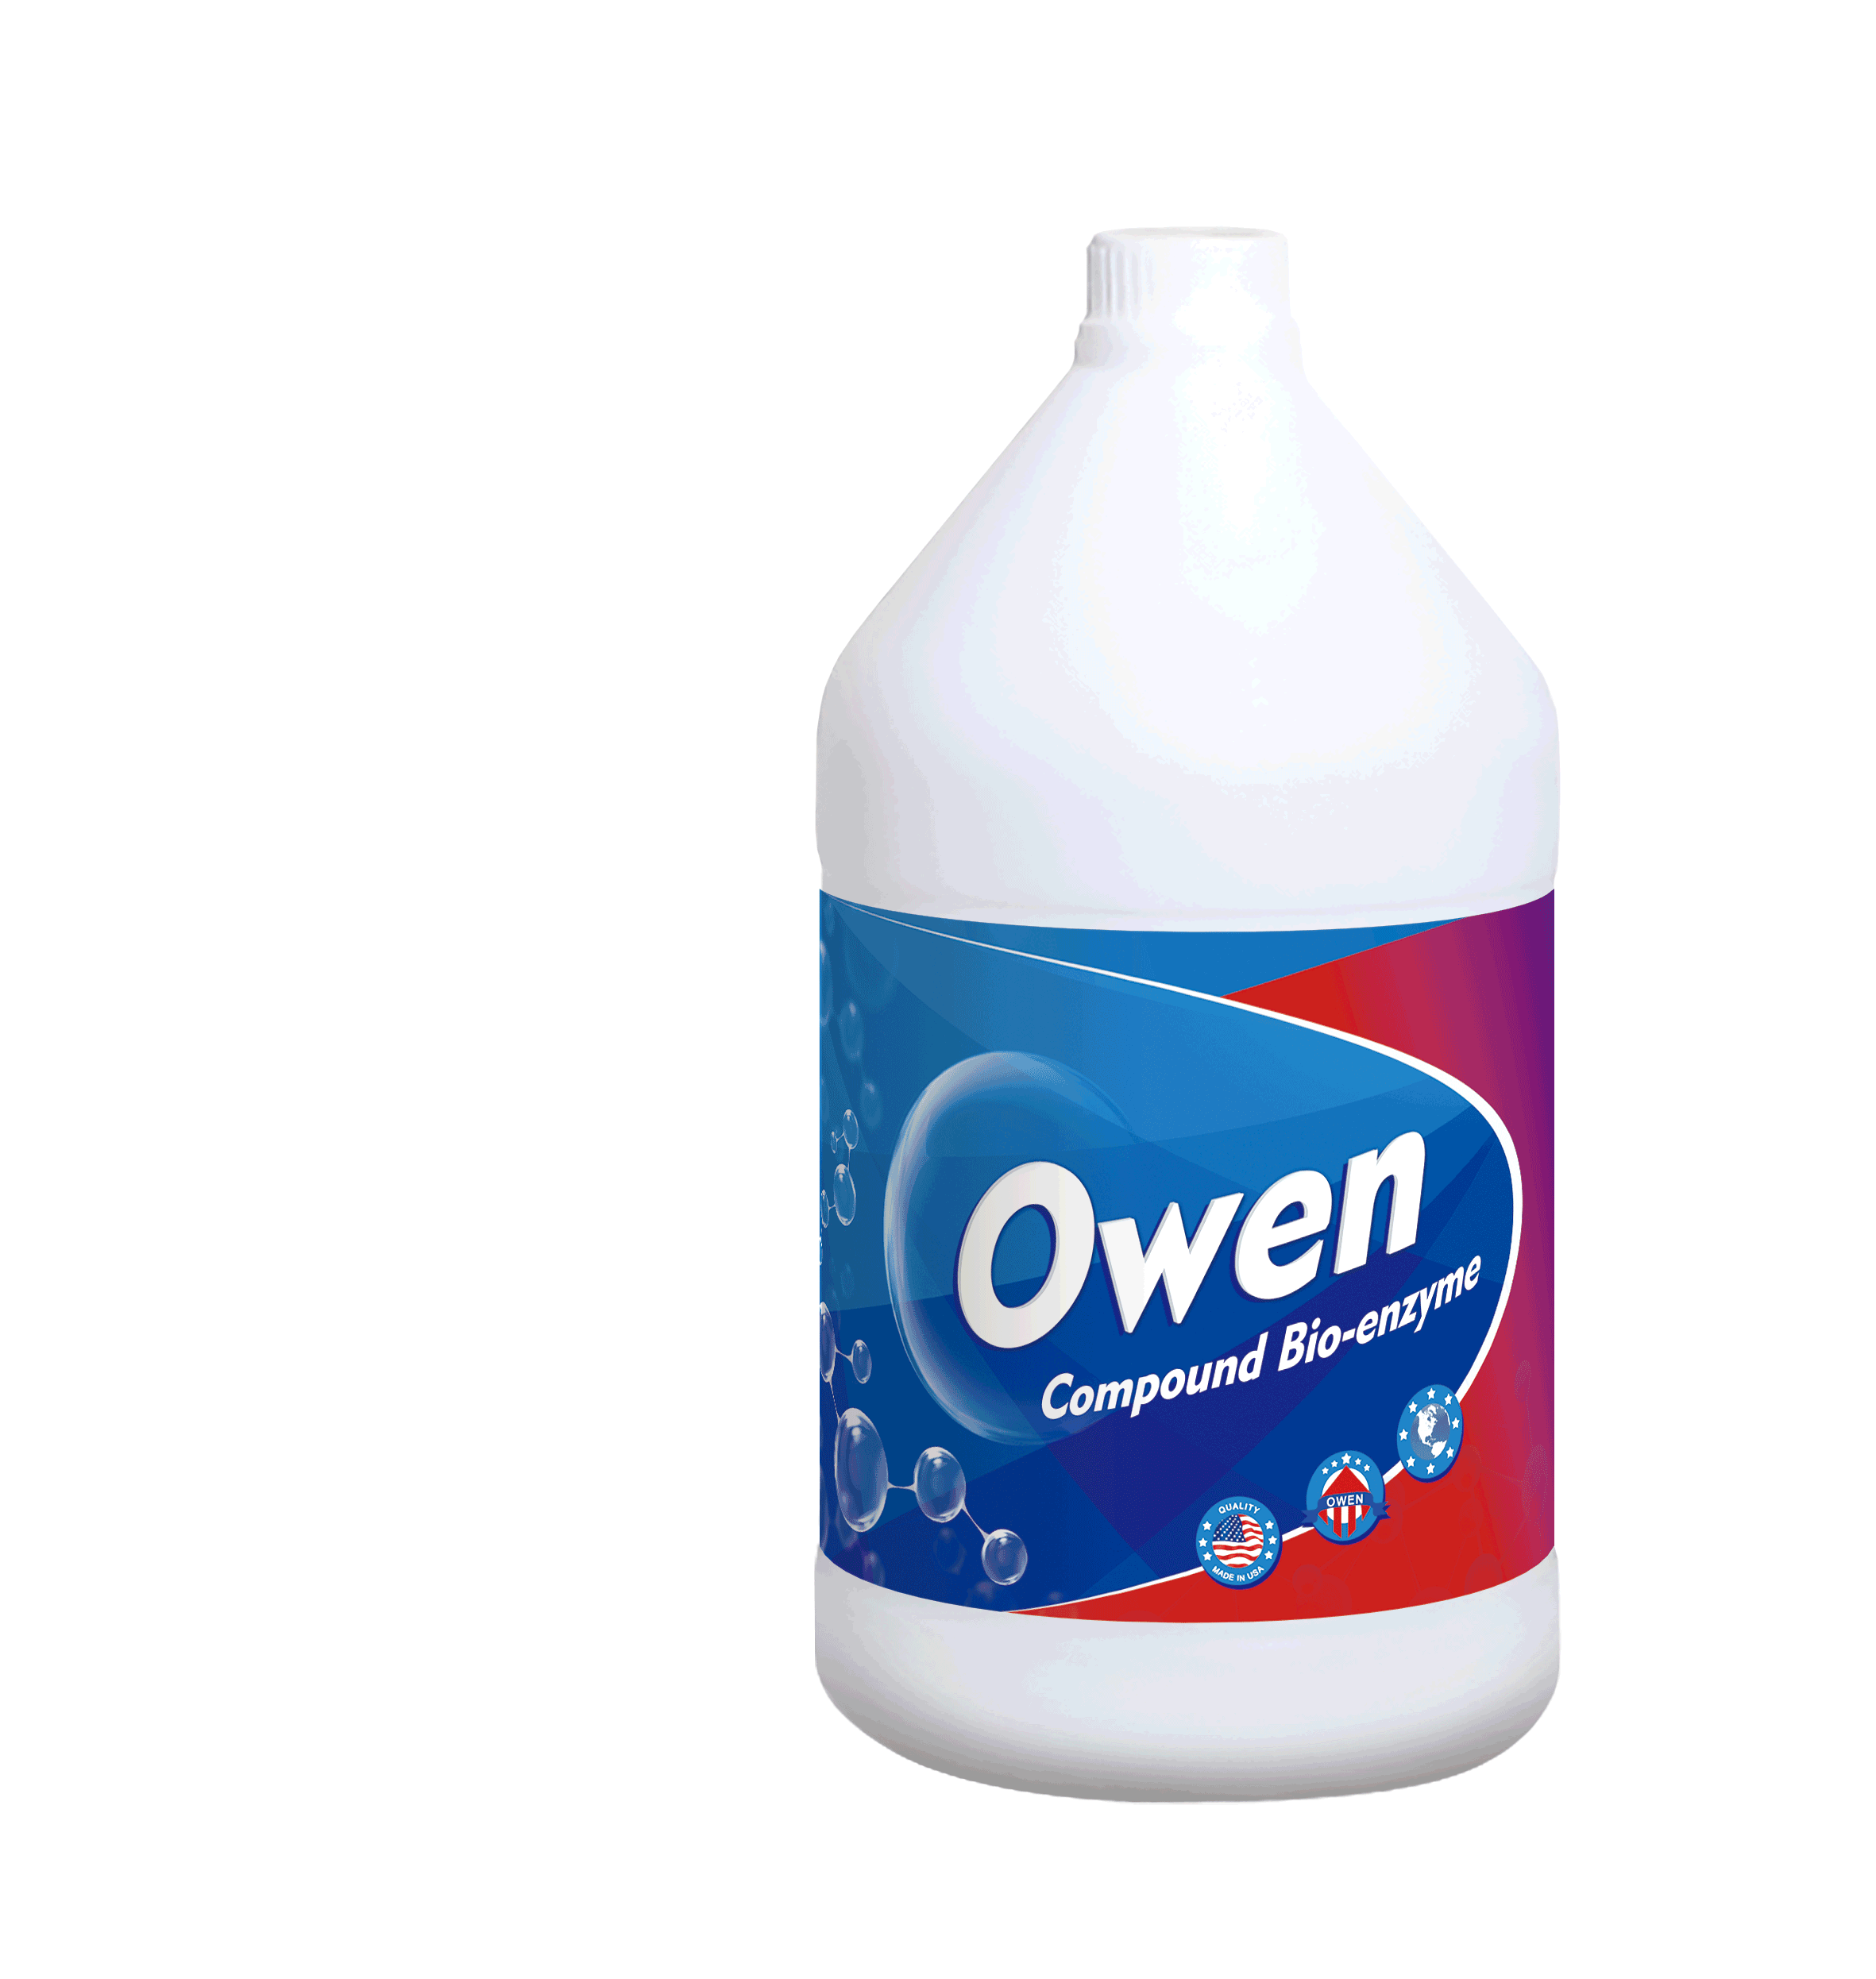 Owen复合酶